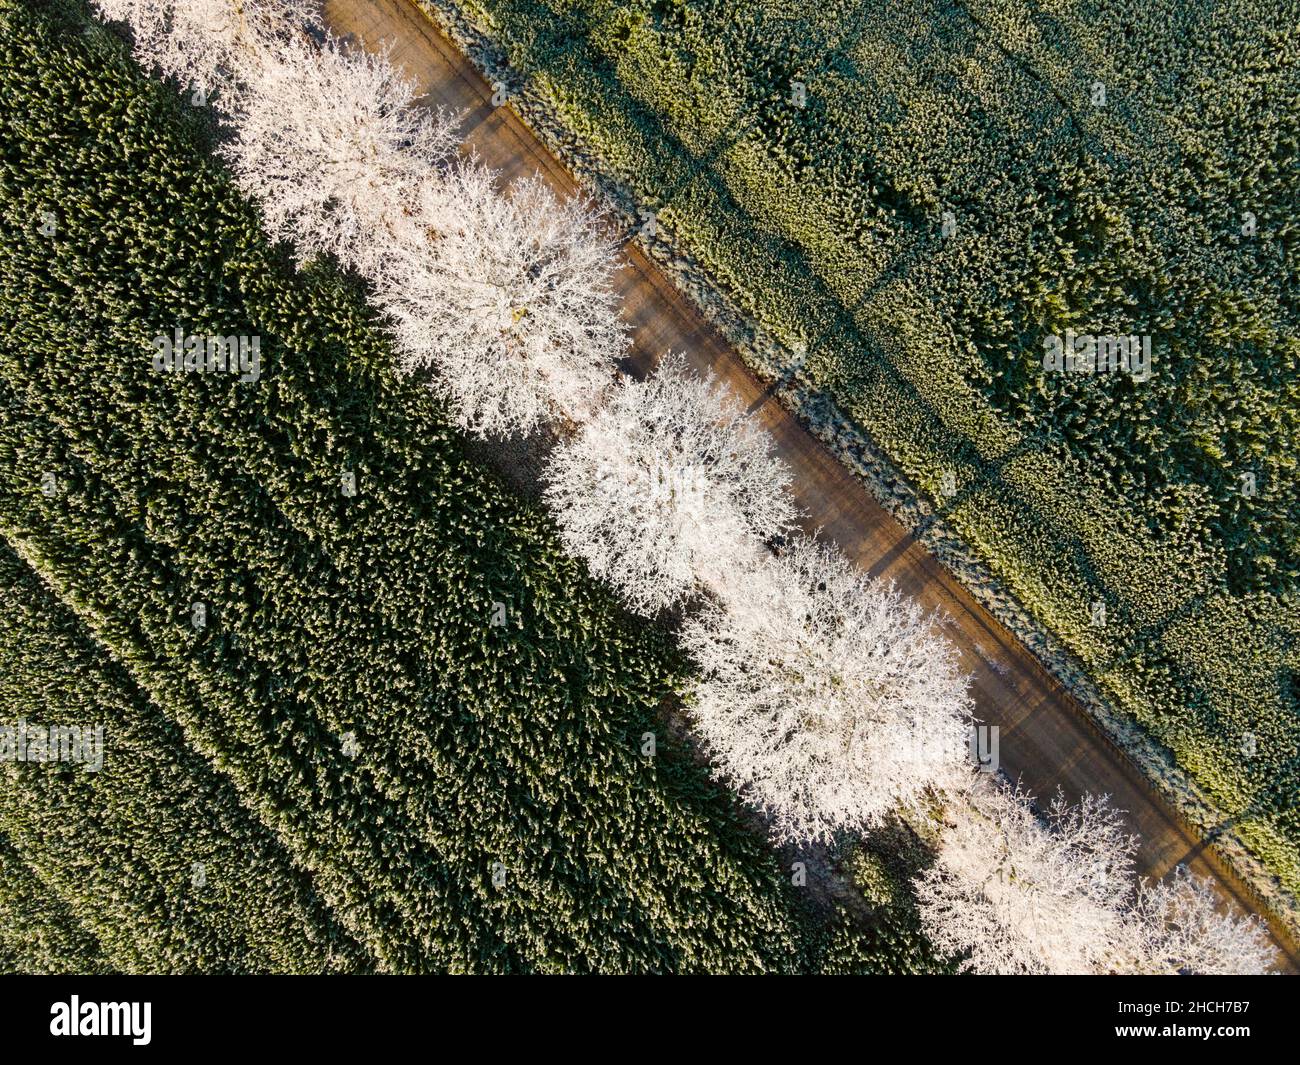 Tir de drone, arbres avec du givre, Berkum, district de peine, Basse-Saxe,Allemagne Banque D'Images